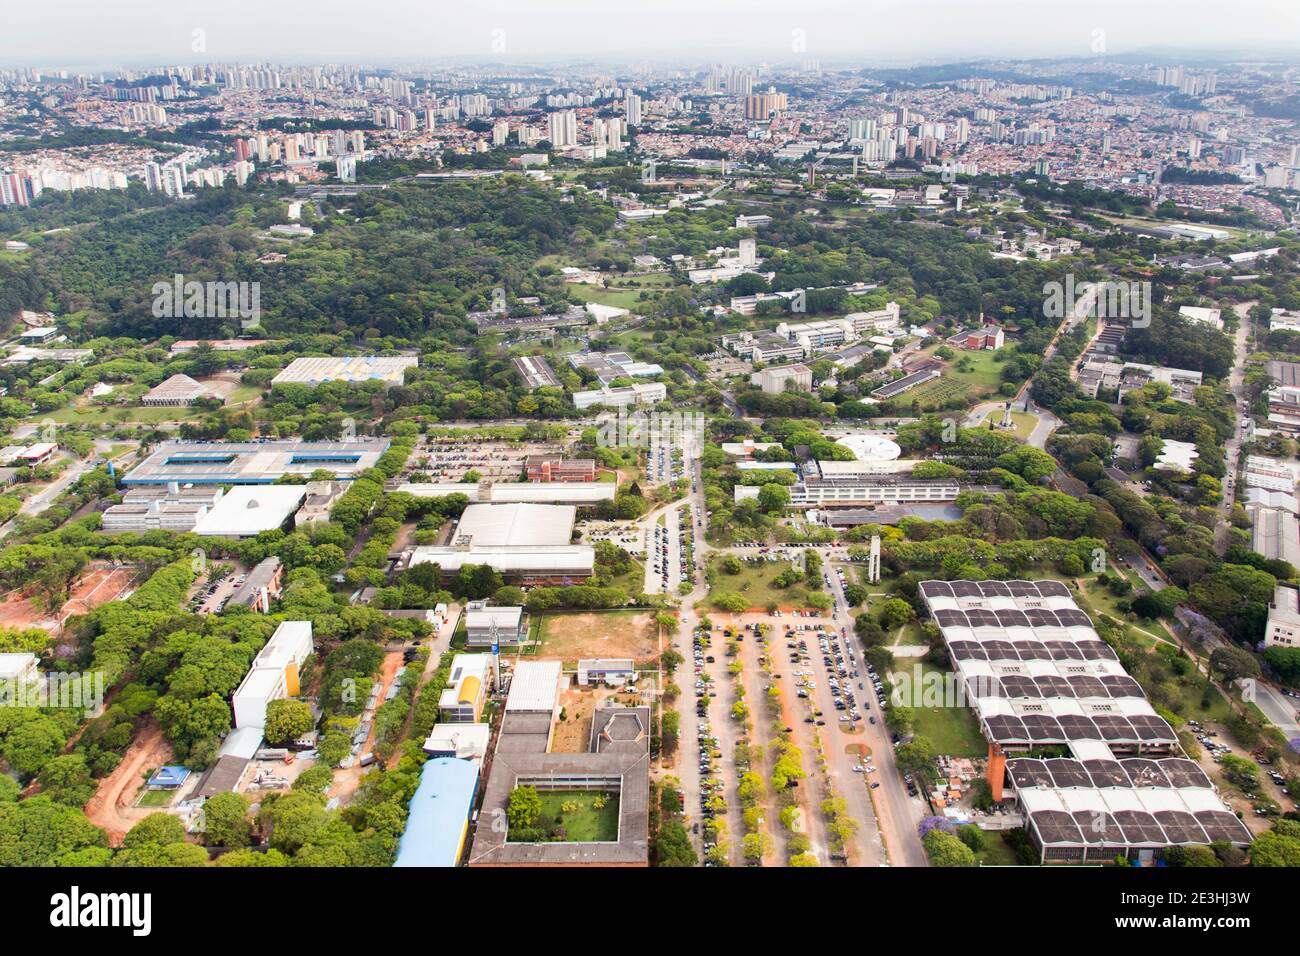 Vue aérienne du campus de l'Université de São Paulo - Brésil - Escola Politécnica Banque D'Images